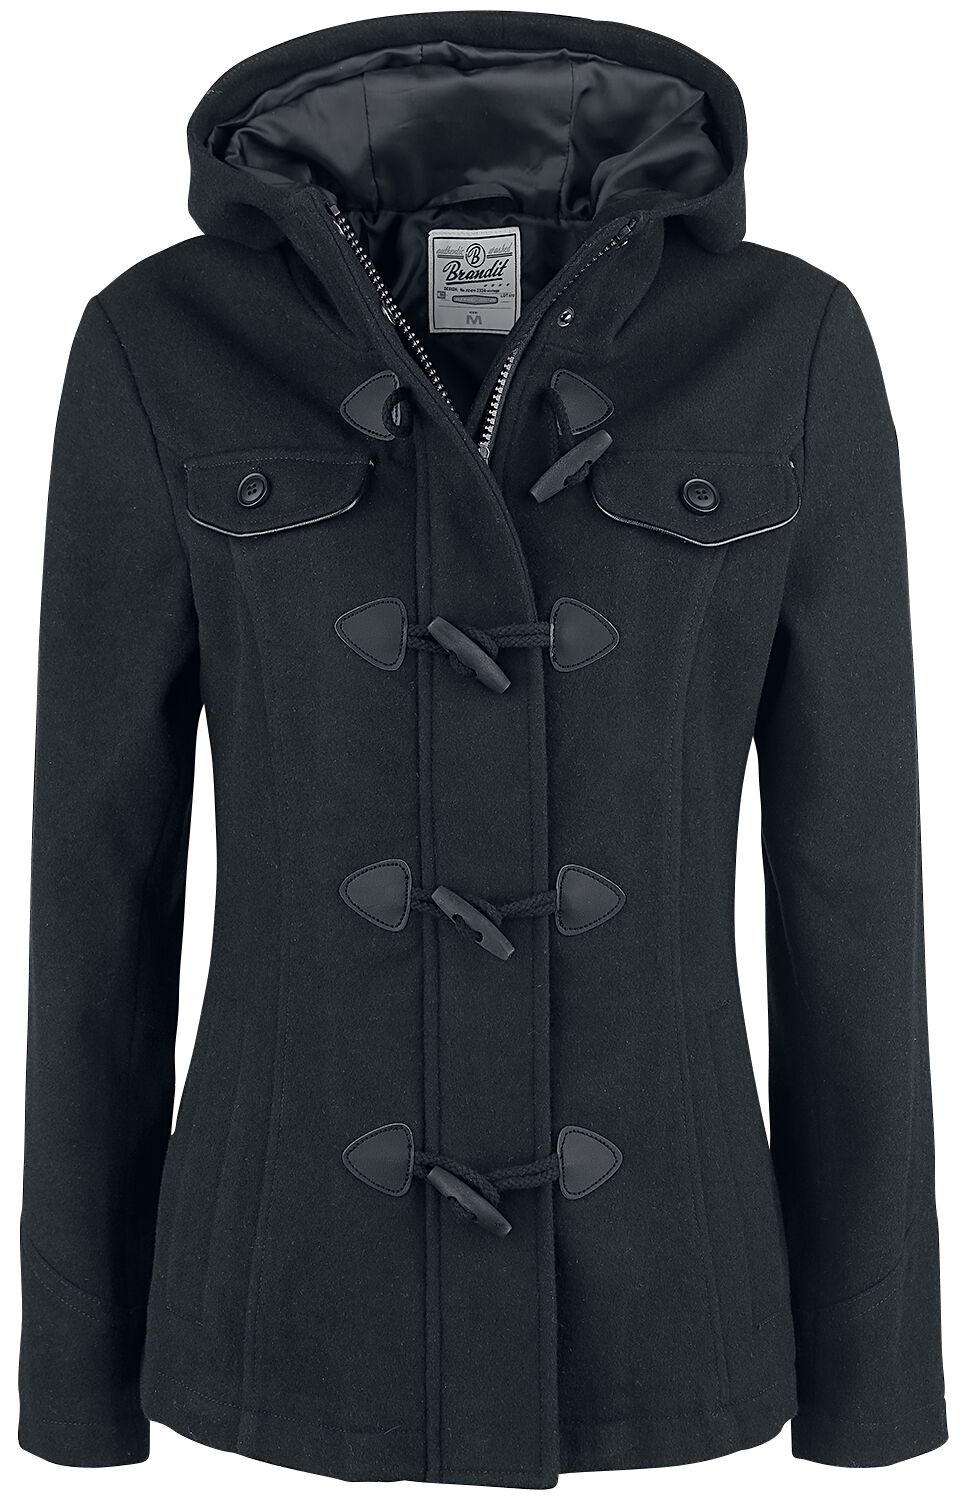 manteau duffle coat noir femme